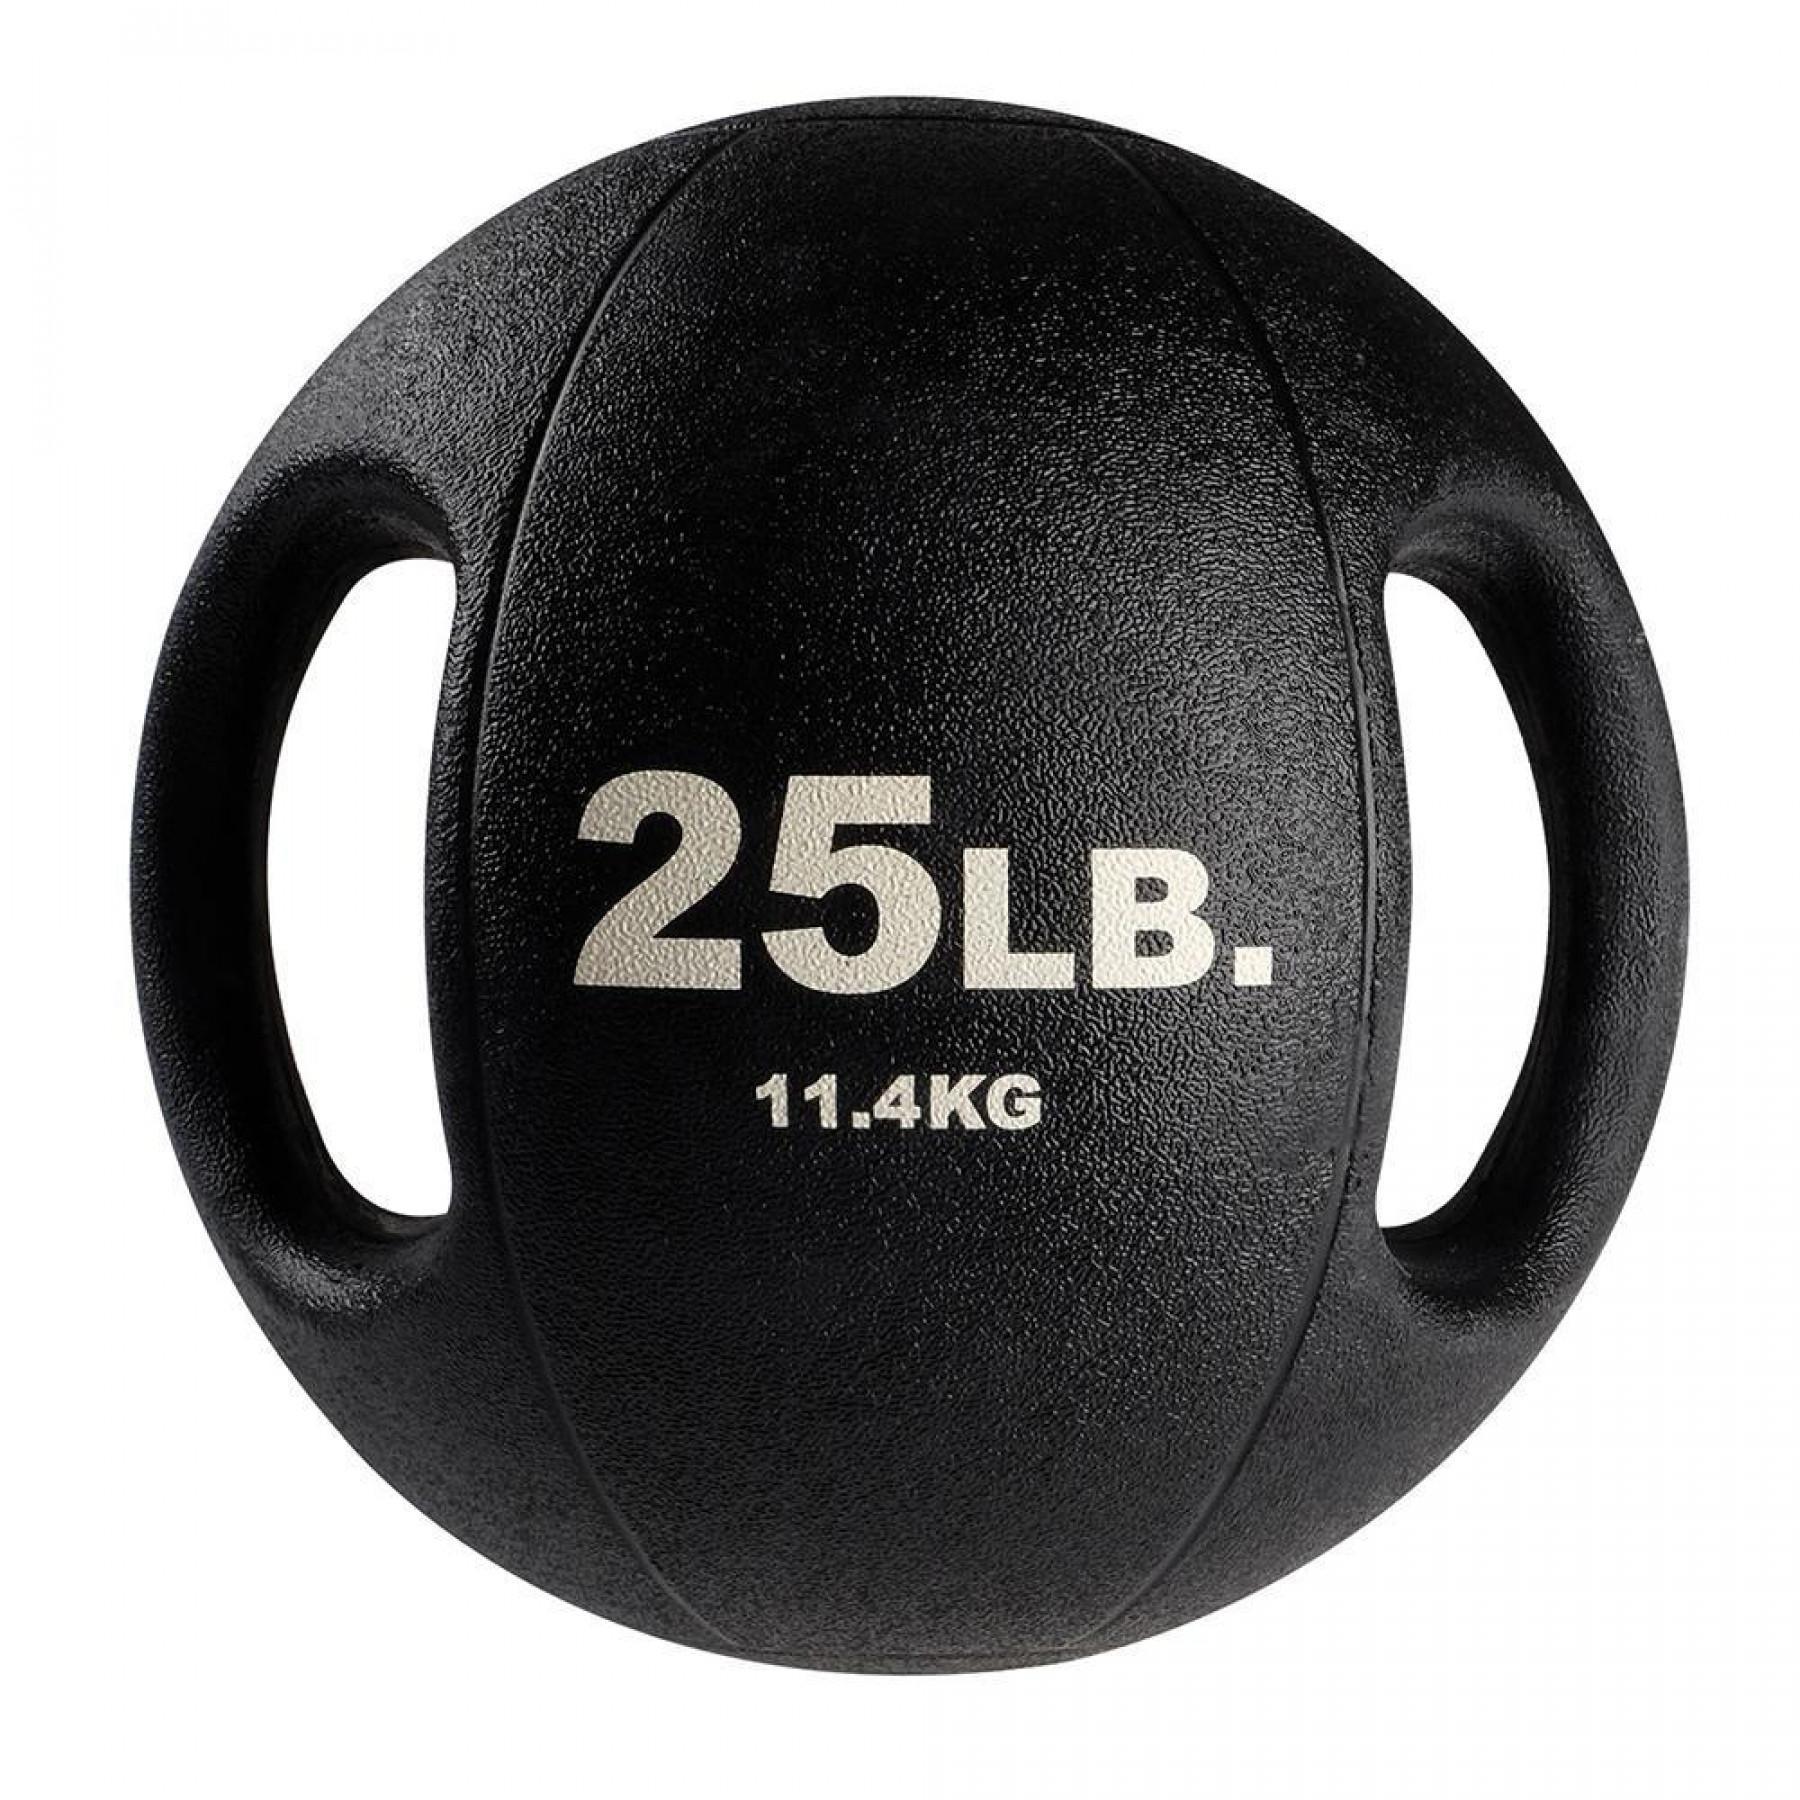 Medizinball 2 Griffe 7,2 kg Body Solid